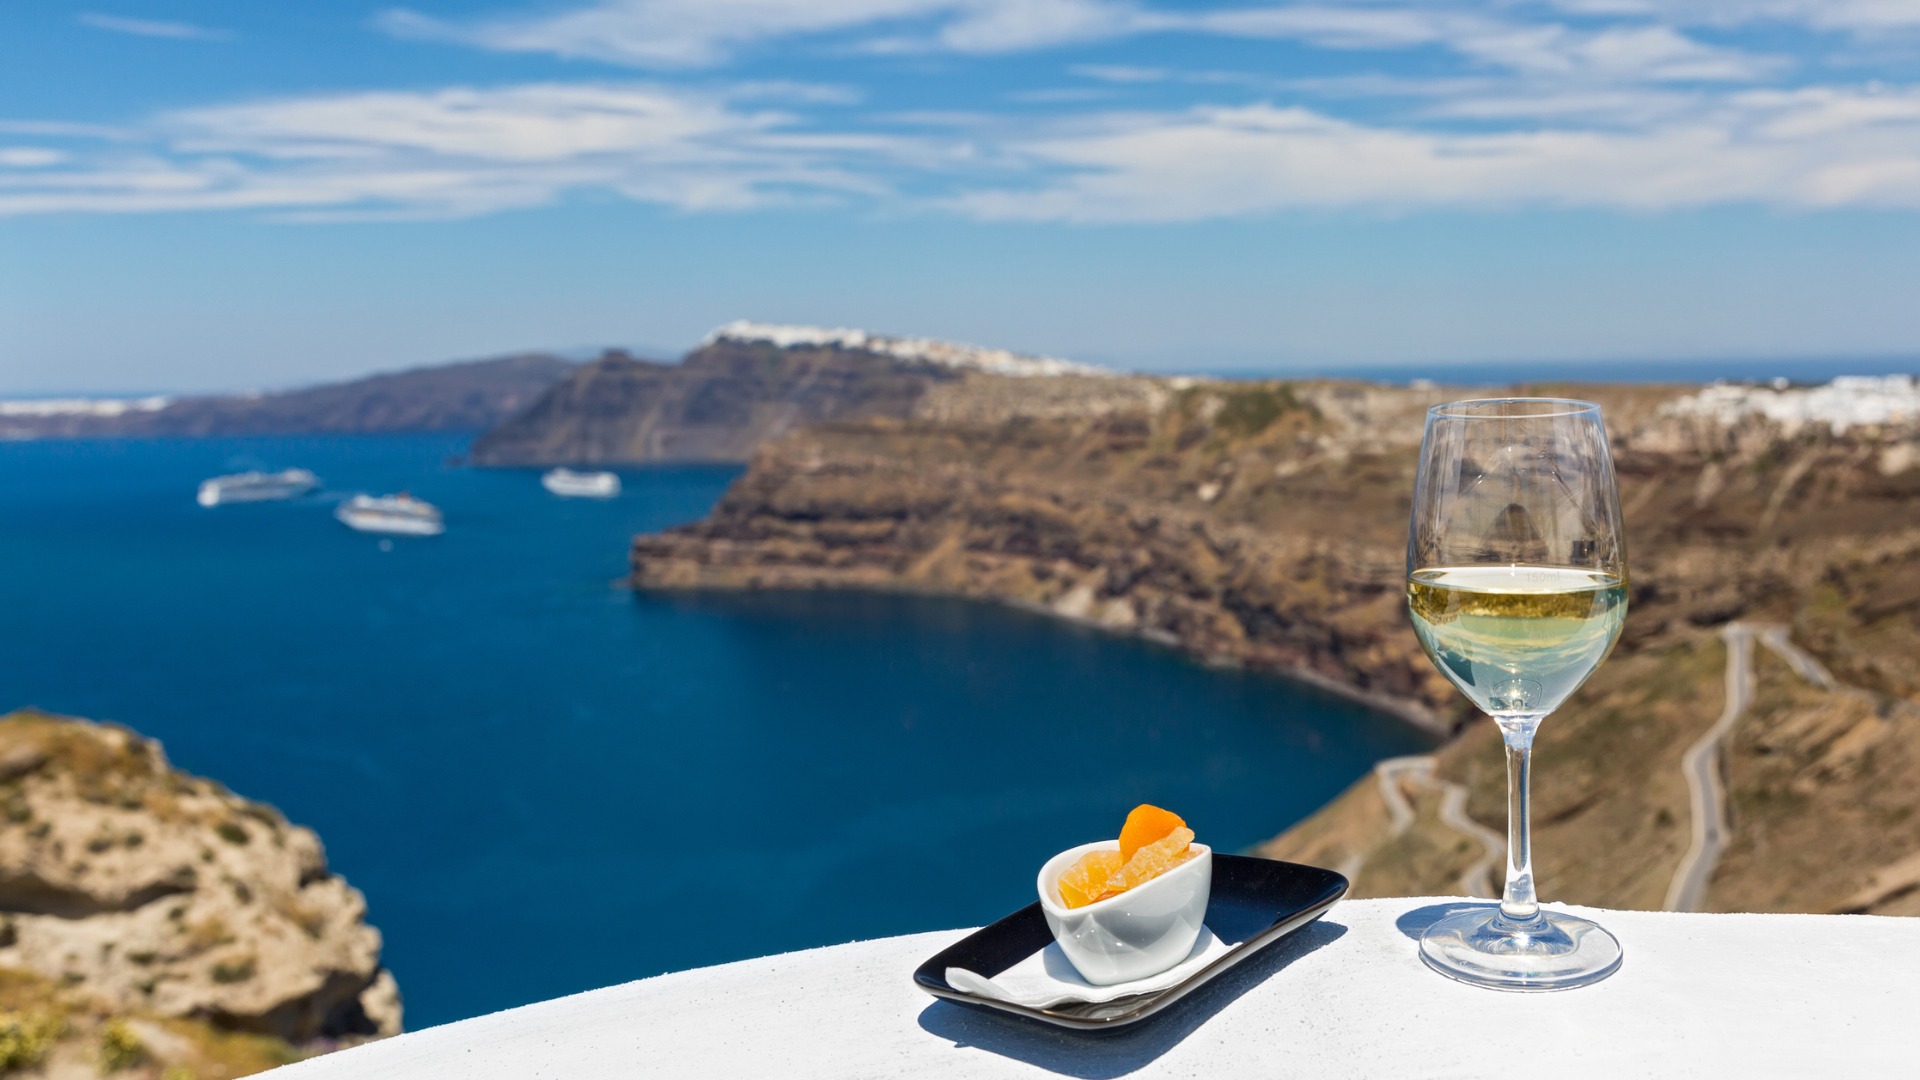 Această imagine arată un pahar de vin alb în prim plan, cu caldera din Santorini în fundal.  Santorini produce unele dintre cele mai bune vinuri grecești. 